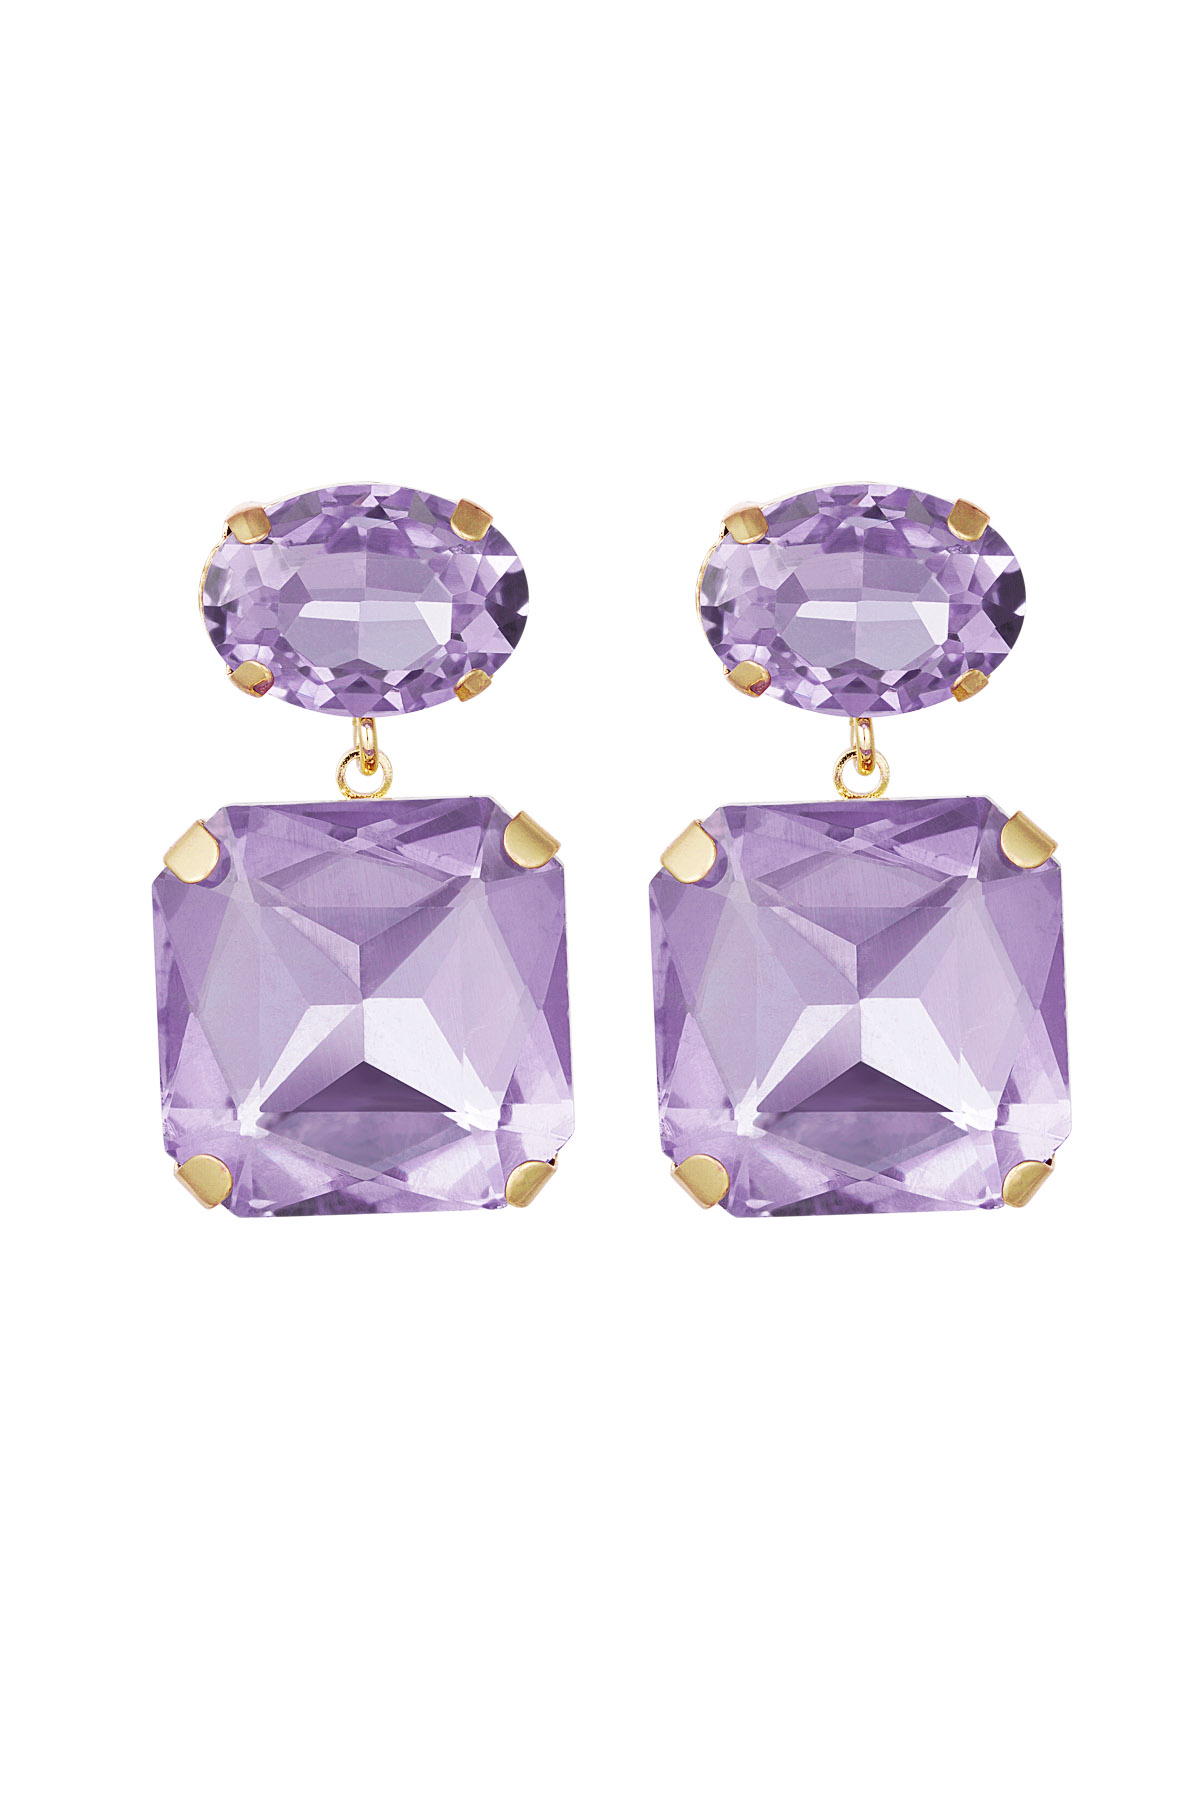 Boucles d'oreilles perles de verre carrées/rondes - Perles de verre violet